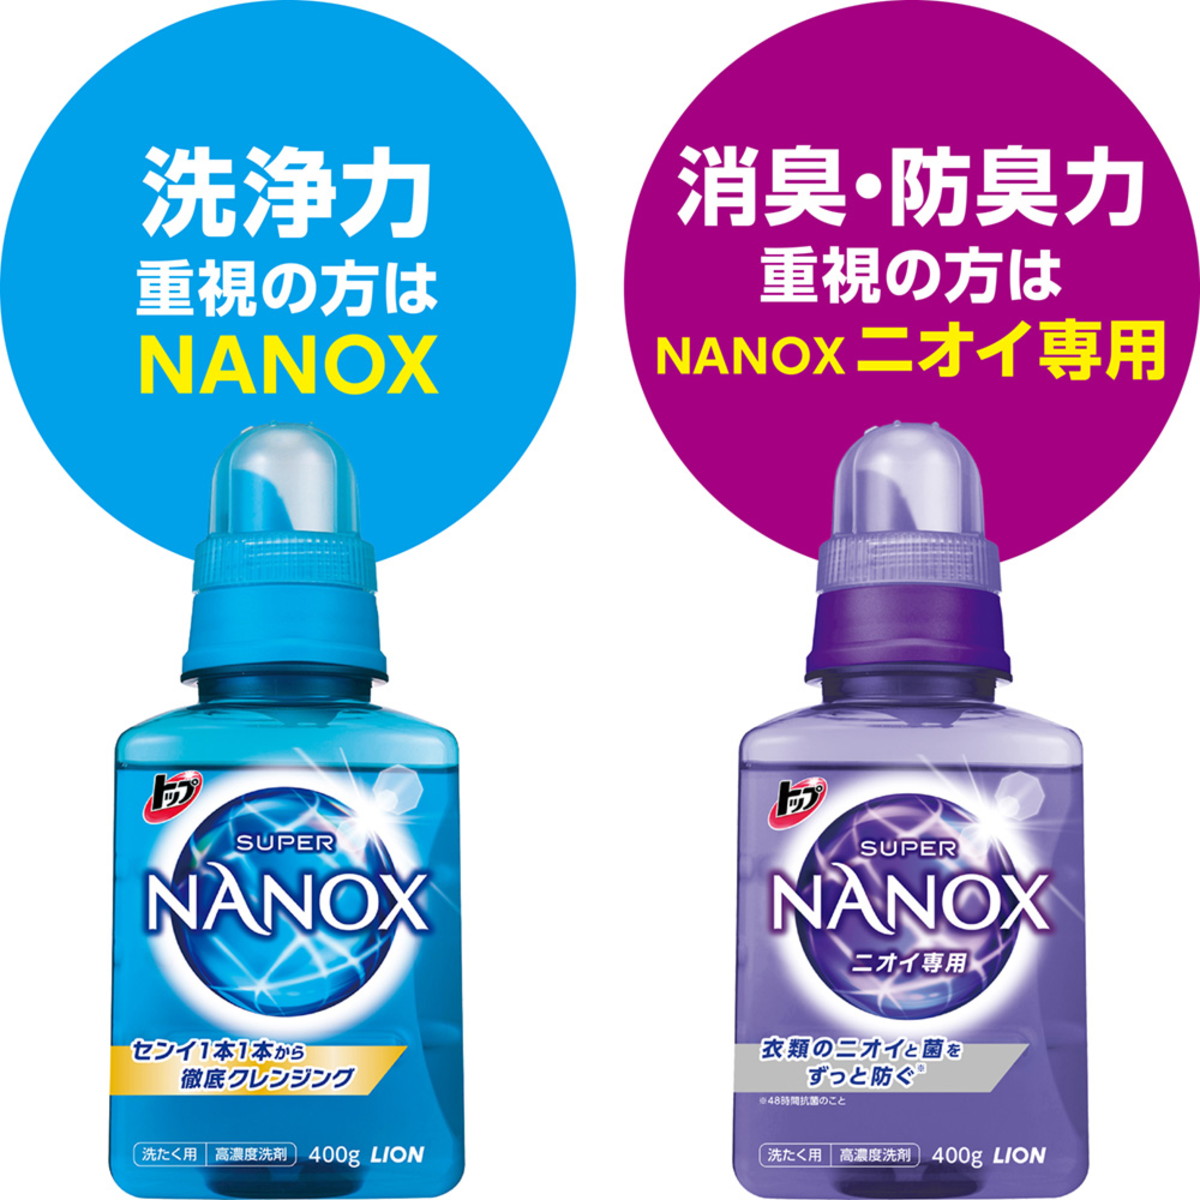 トップ スーパーナノックス NANOX 液体洗濯洗剤 ニオイ専用 抗菌 高濃度 詰め替え用 超特大 1230g×6袋